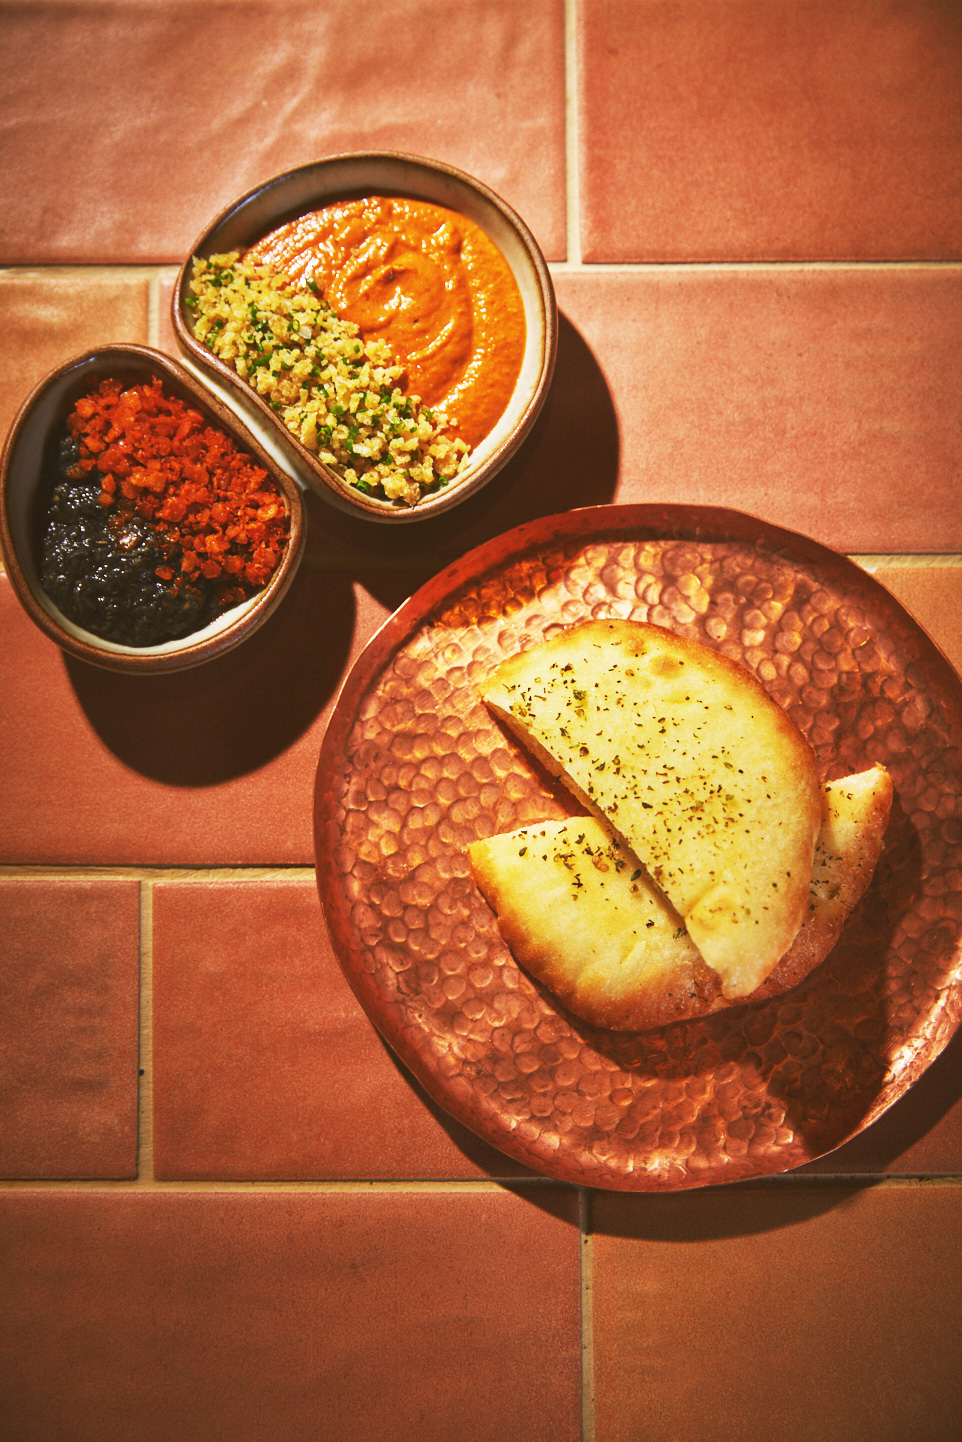 在Aleisha'初次登場的菜單裡，就有常見於歐洲和北非的主食——皮塔餅（Pita），他使用蛋糕麵粉製作皮塔餅，再拉高含水量，凸顯柔潤多層的口感。（圖片來源：Aleisha'提供）